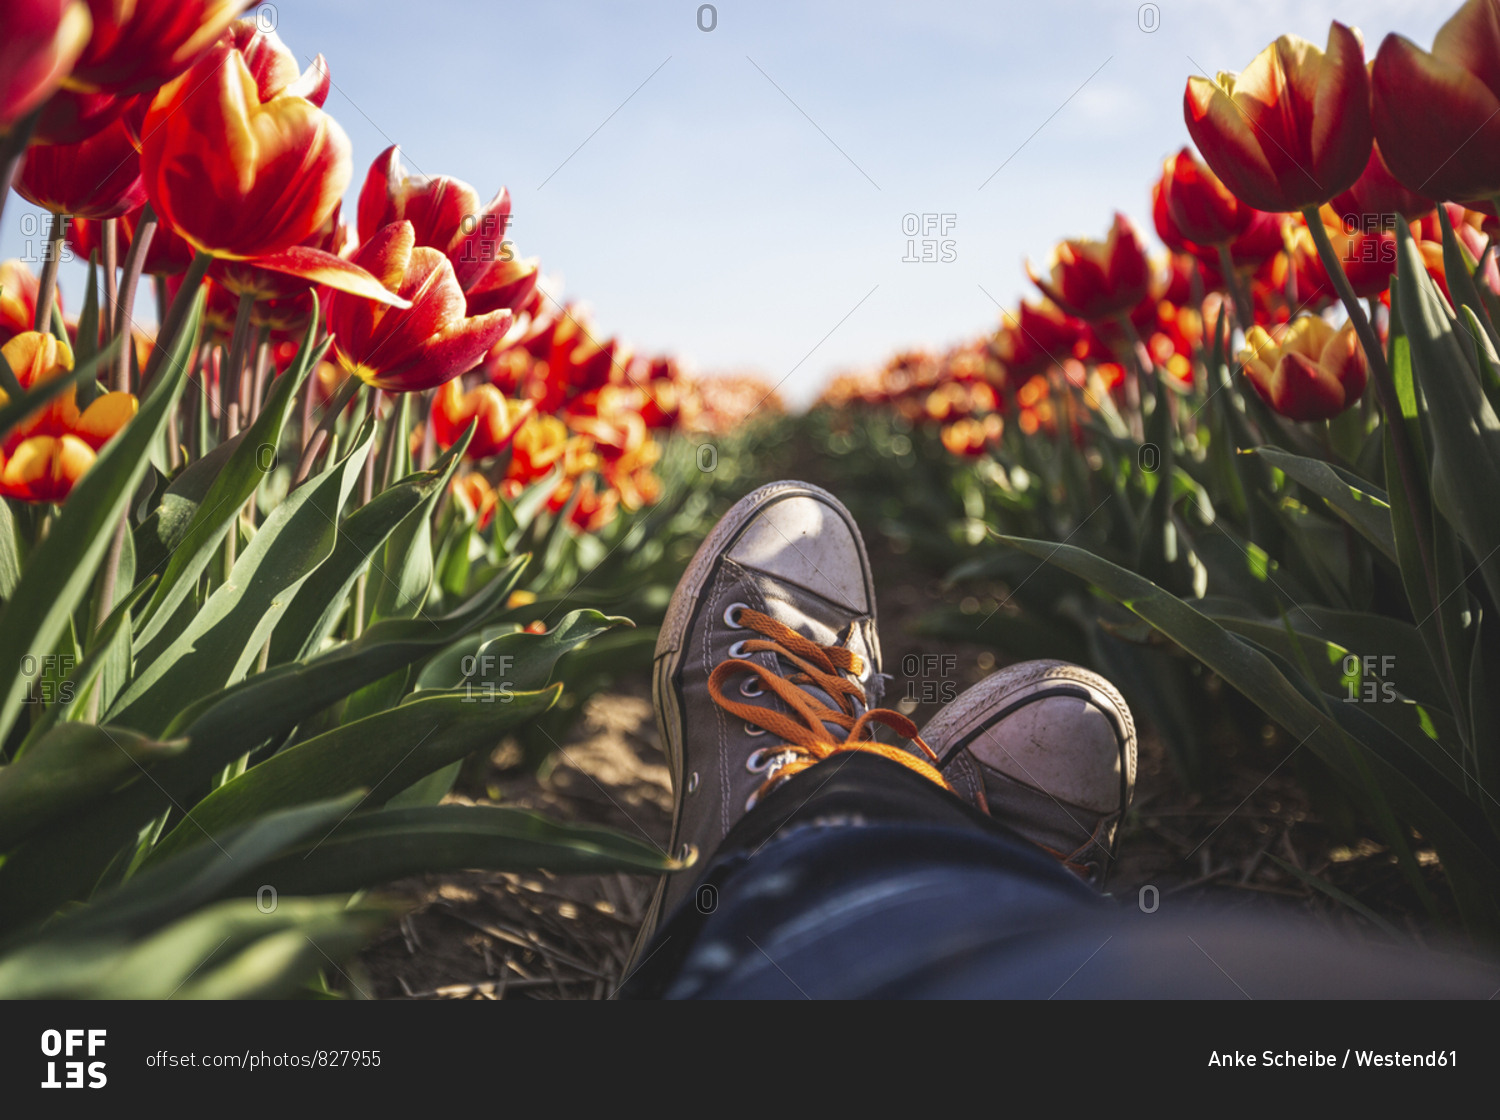 Germany- woman's feet in a tulip field